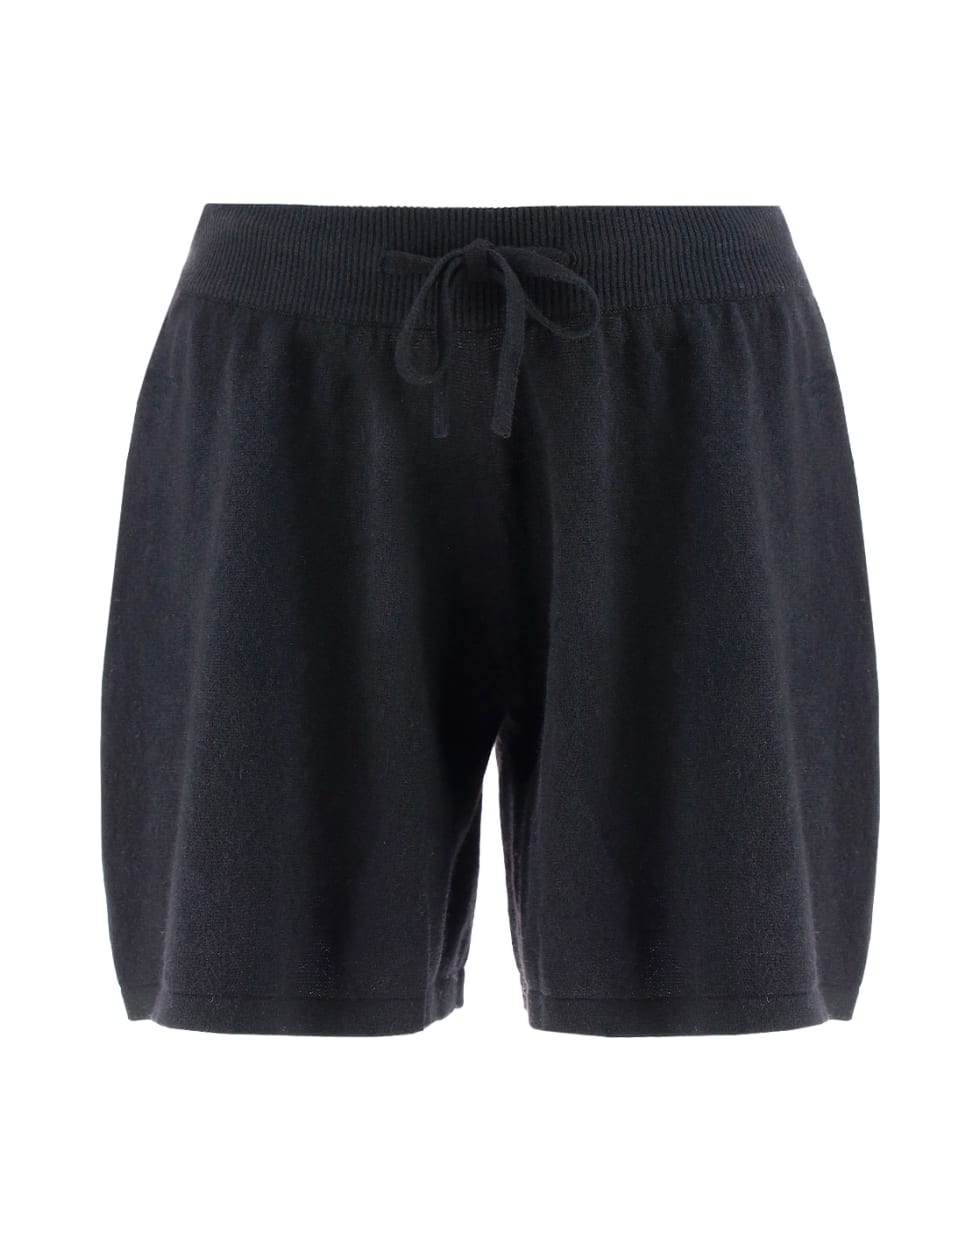 Lisa Yang Gio Shorts - Black